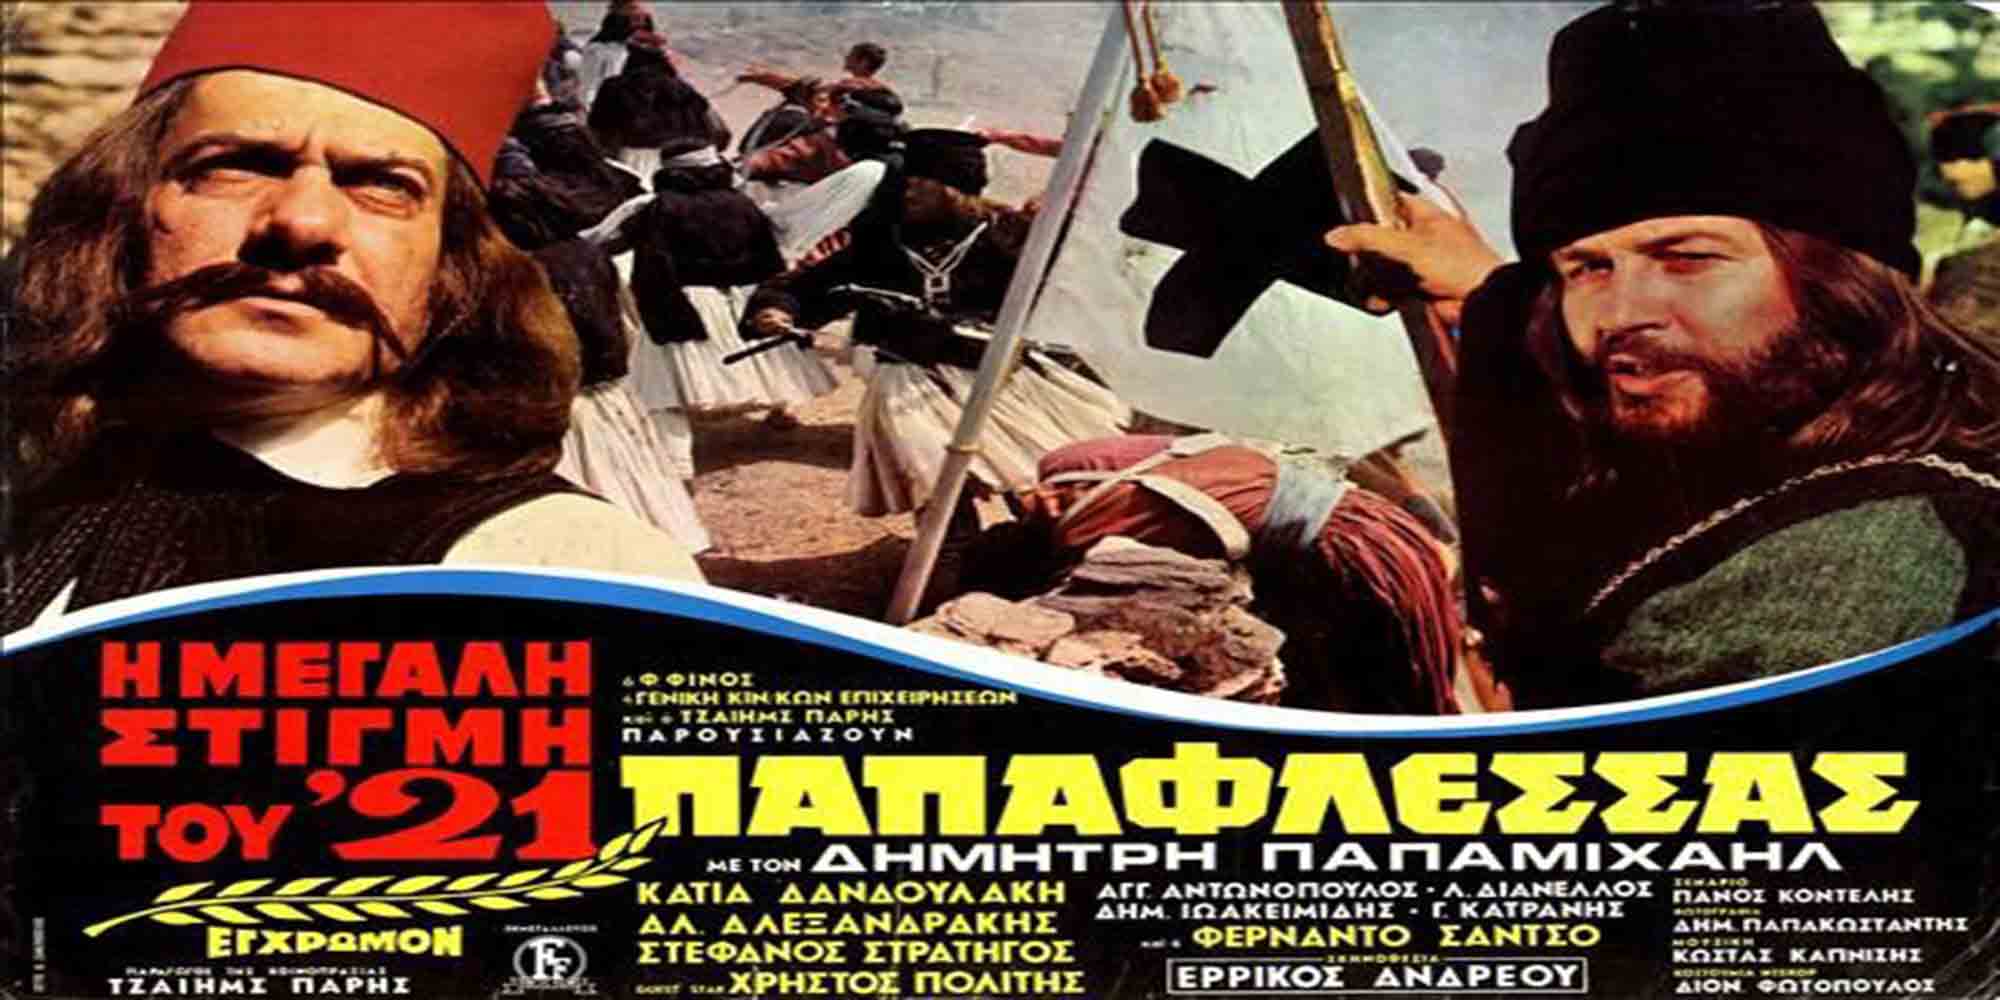 Η αφίσα της ταινίας «Παπαφλέσσας» για την Ελληνική Επανάσταση